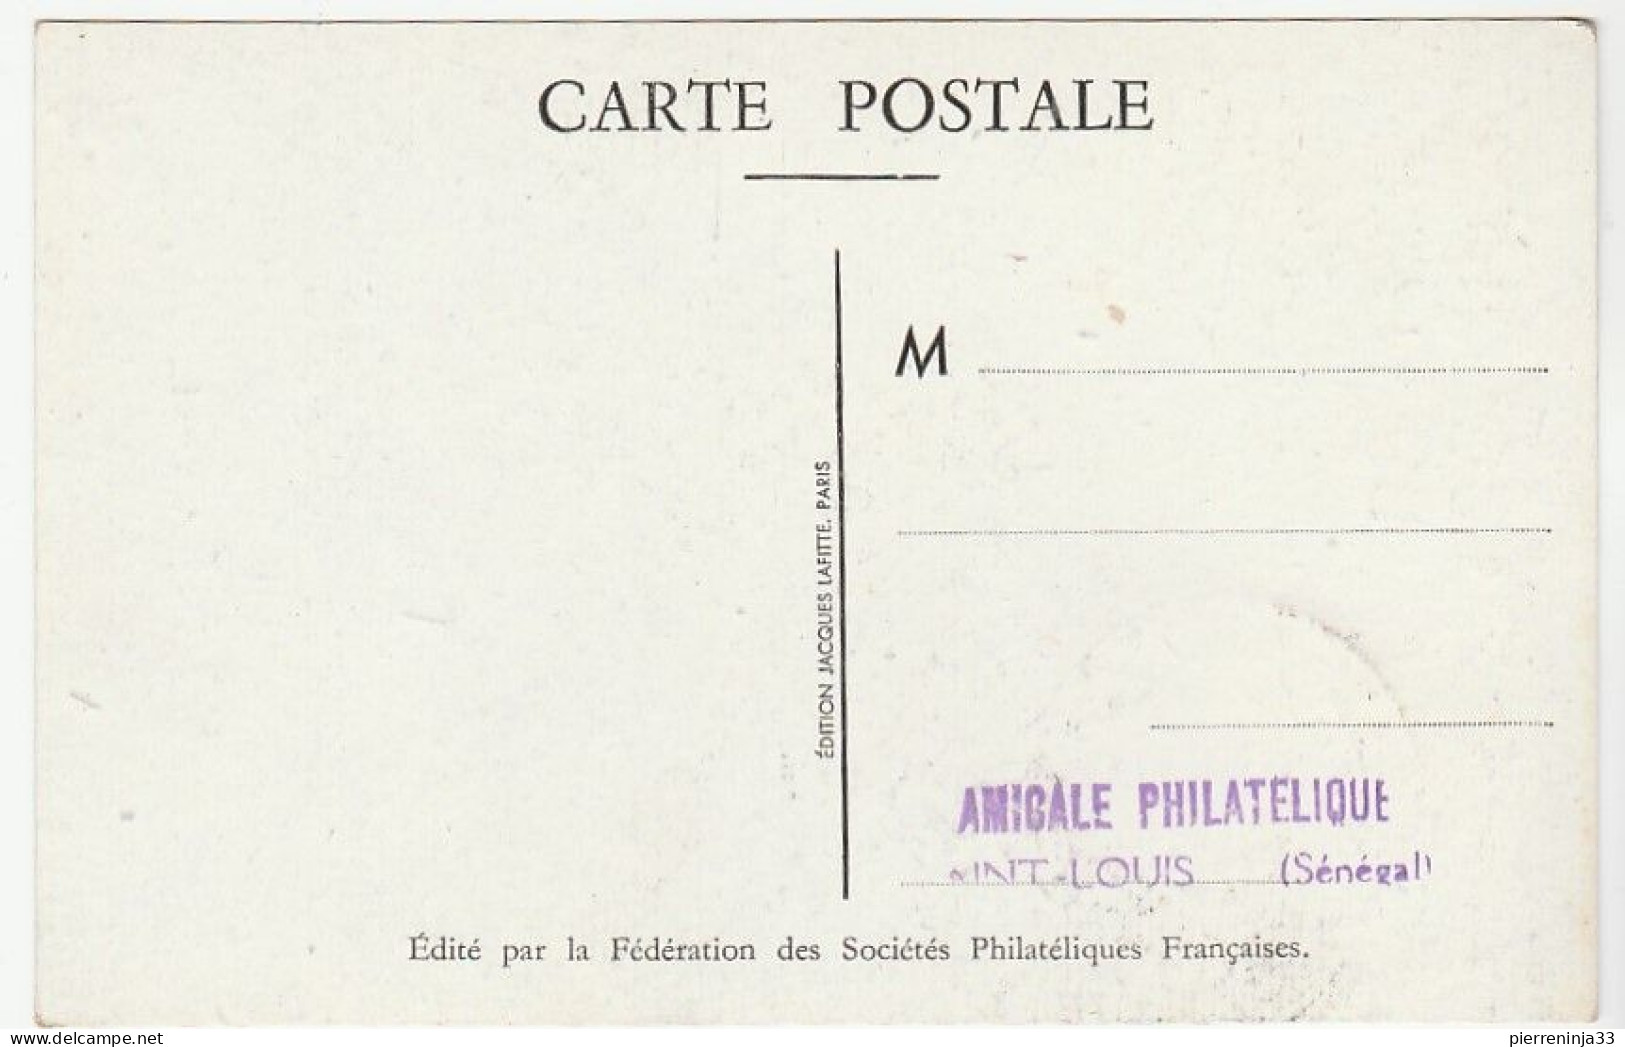 Carte Journée Du Timbre, Saint Louis Du Sénégal, Aviation, 1948 - Storia Postale